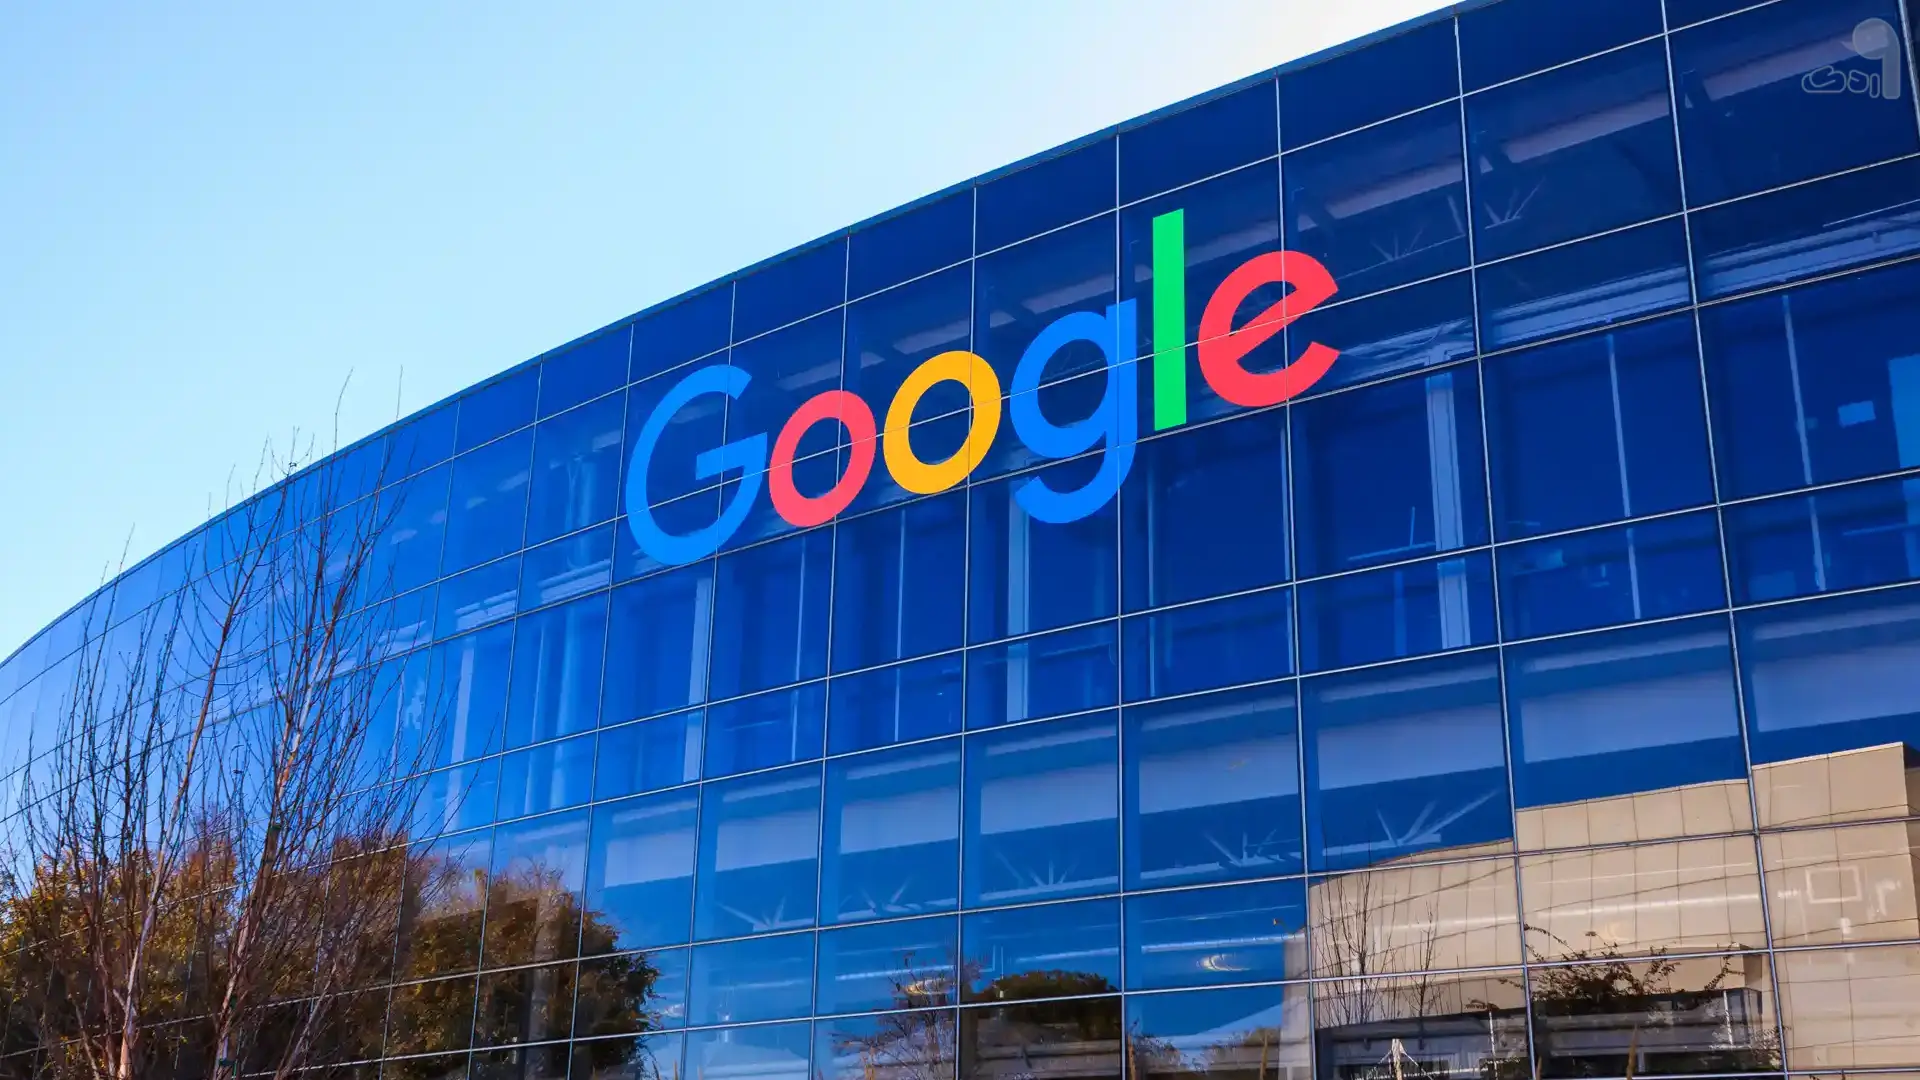 کاربران گوگل امکان حذف تصاویر خصوصی را از جستجوها دارند - اردک دیجیتال